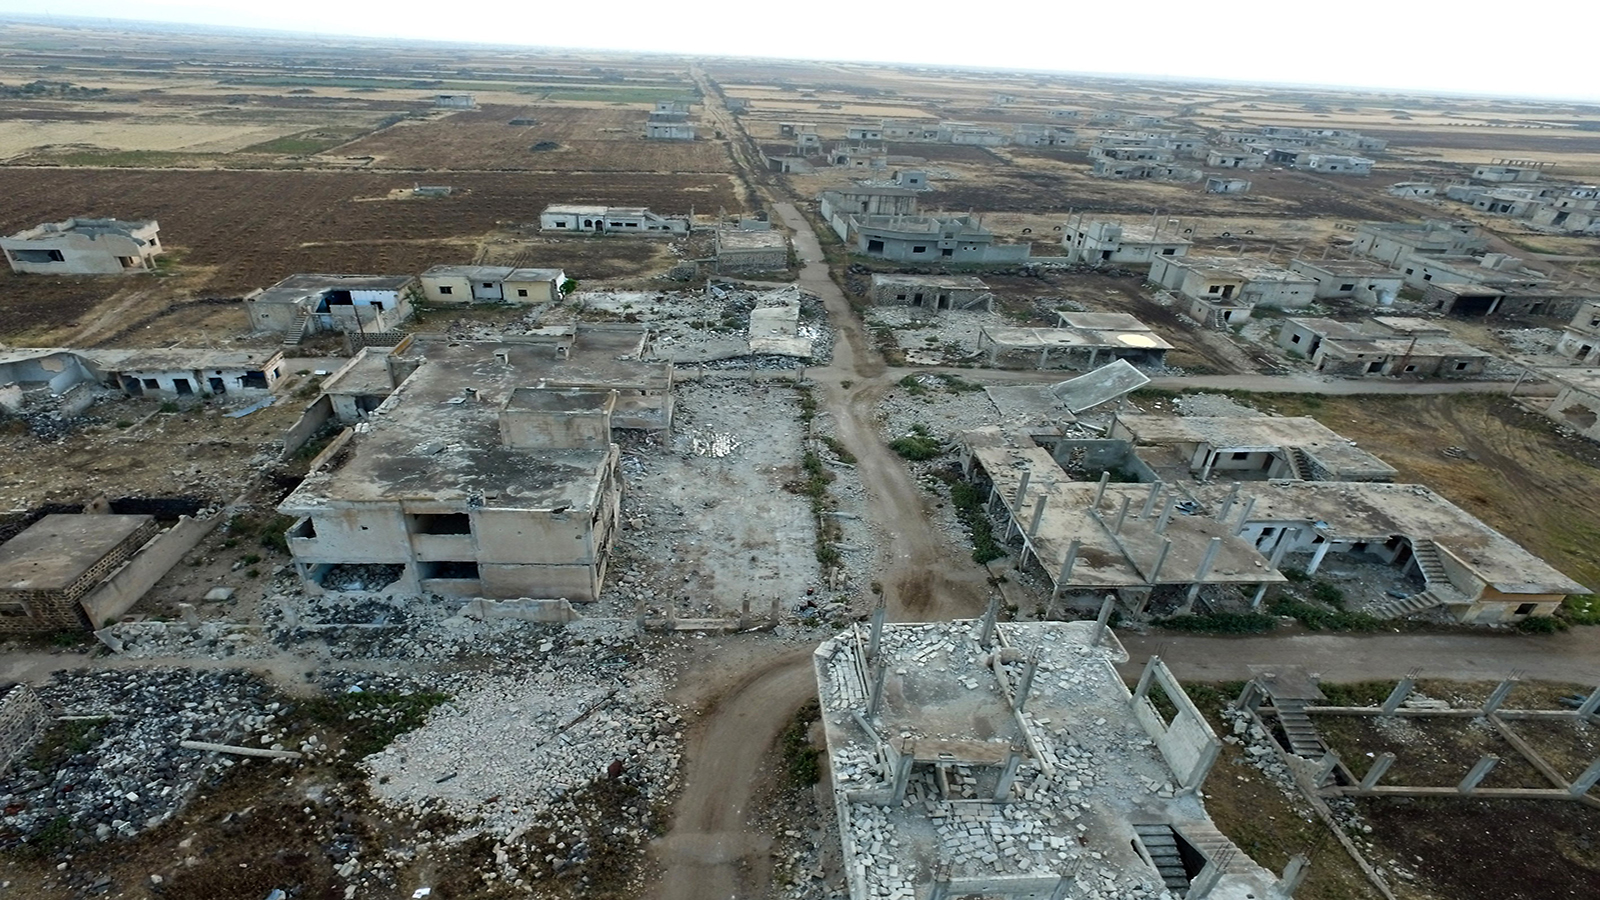 حمص الشمالي: قصة "المصالحة" مع كنانة حويجة والضابط الروسي